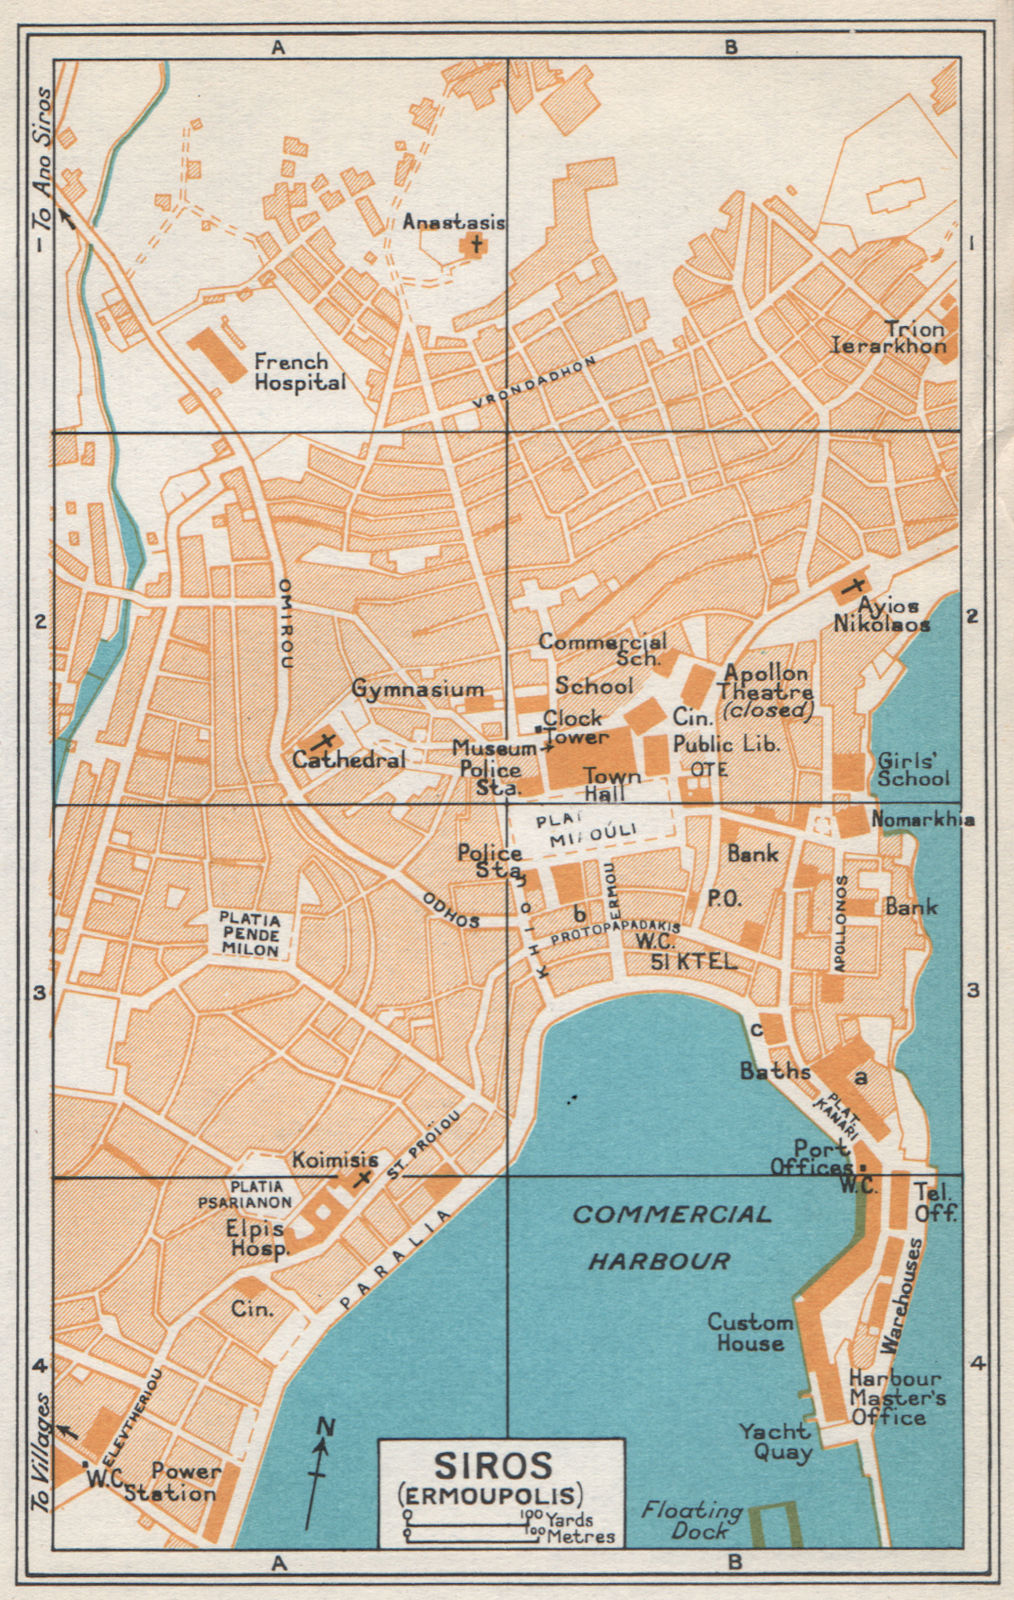 ERMOUPOLI, Syros. Vintage town map plan. Aegean, Greece. Siros Syra 1967